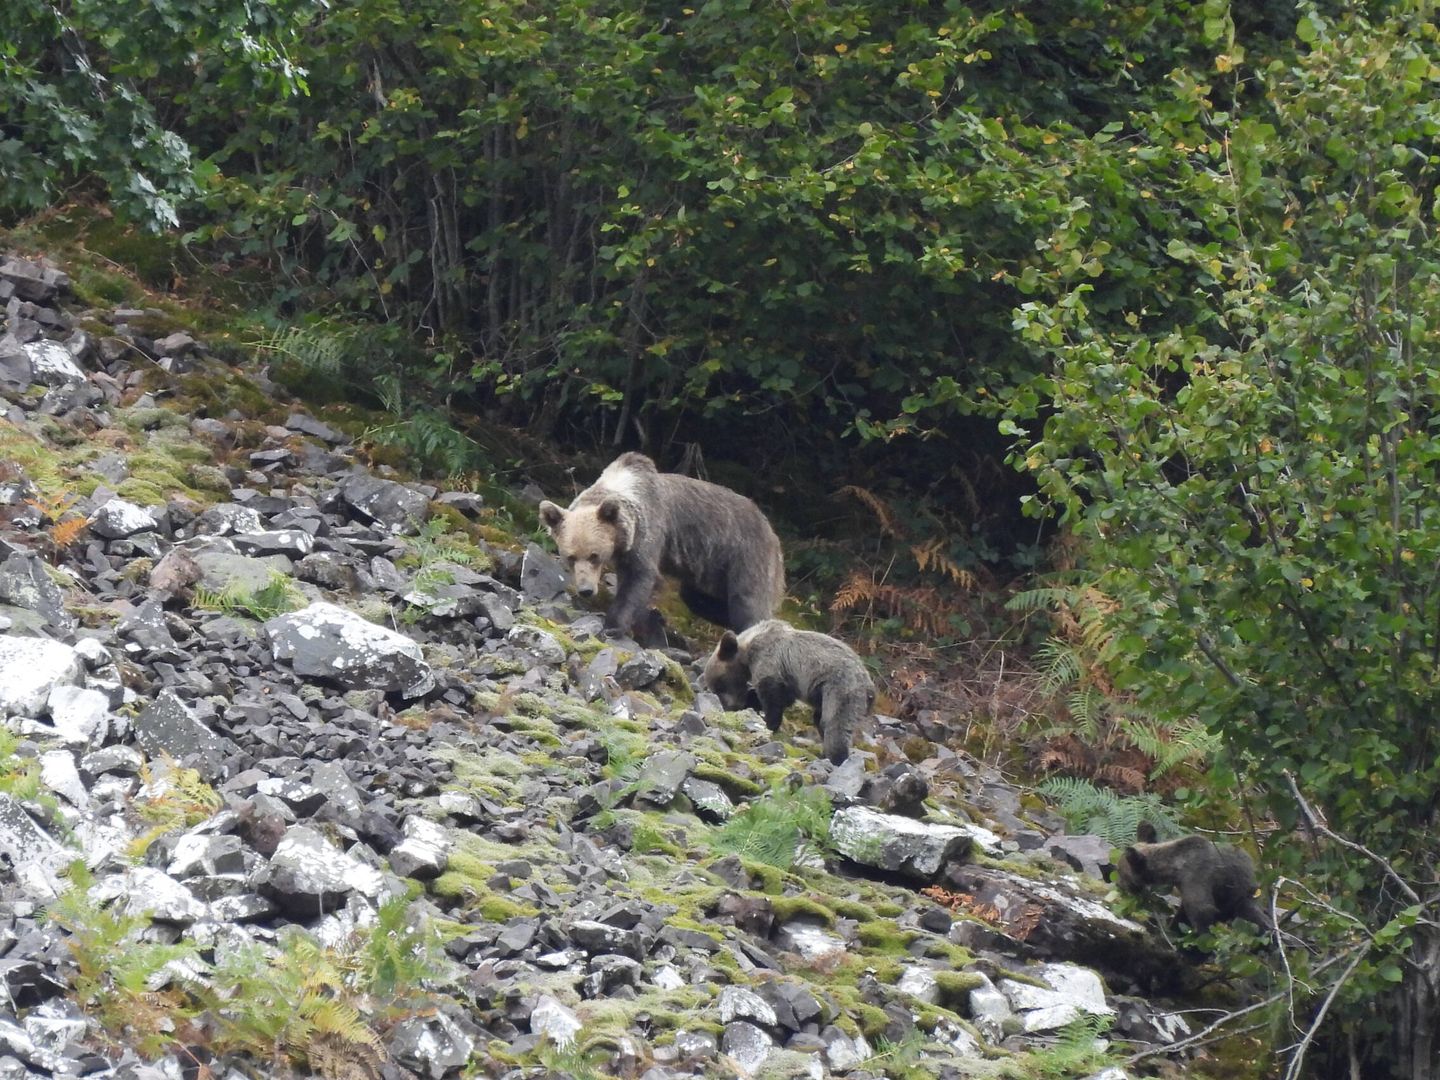 Los conservacionistas siguen encontrando cepos y trampas que ponen en riesgo a los osos. (Alfonso Polvorinos)